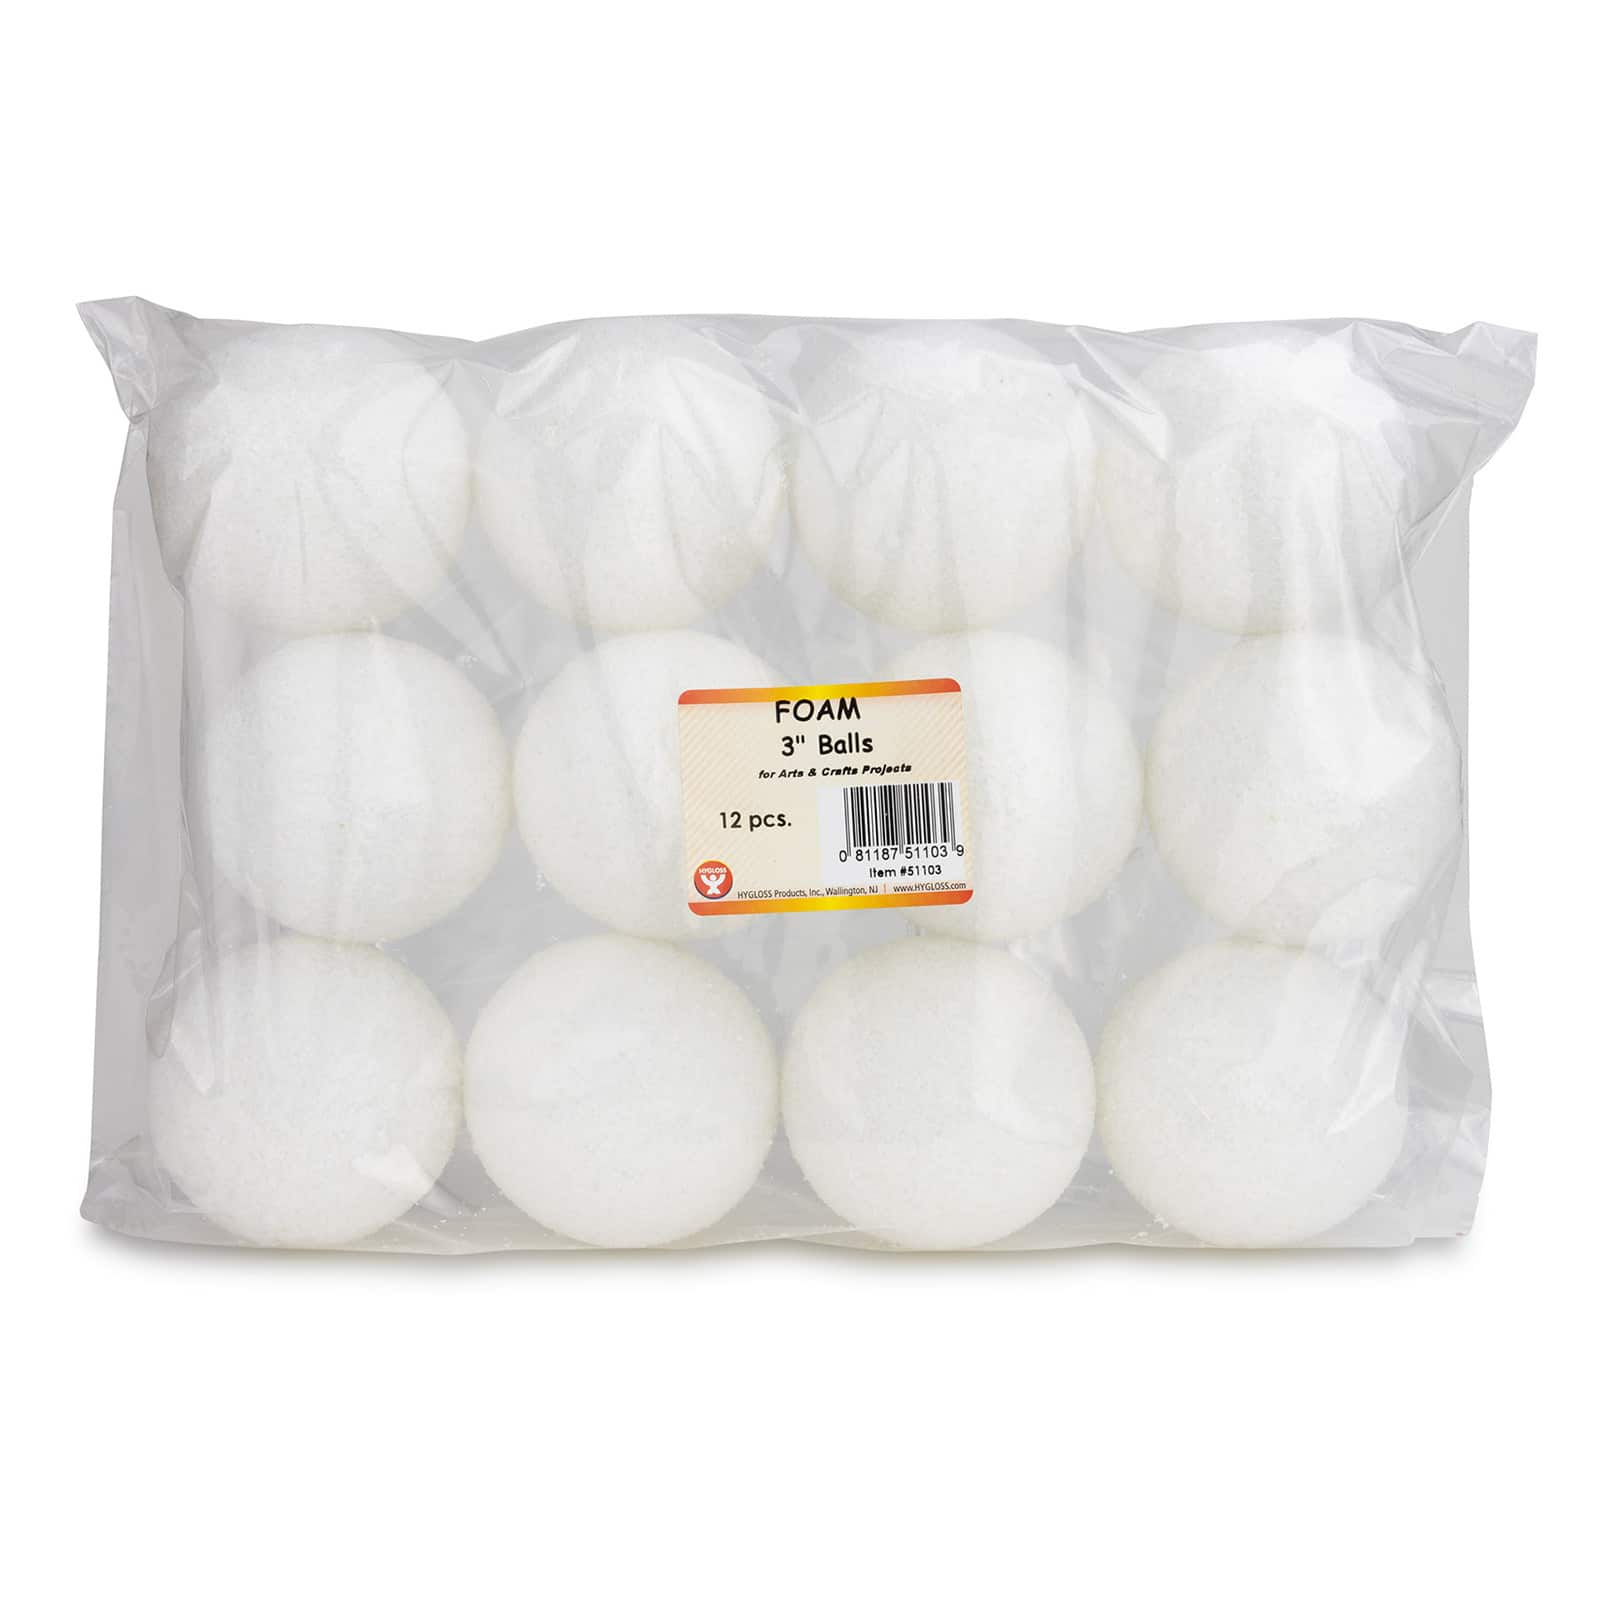 Hygloss® 6 Craft Foam Balls, 6ct.